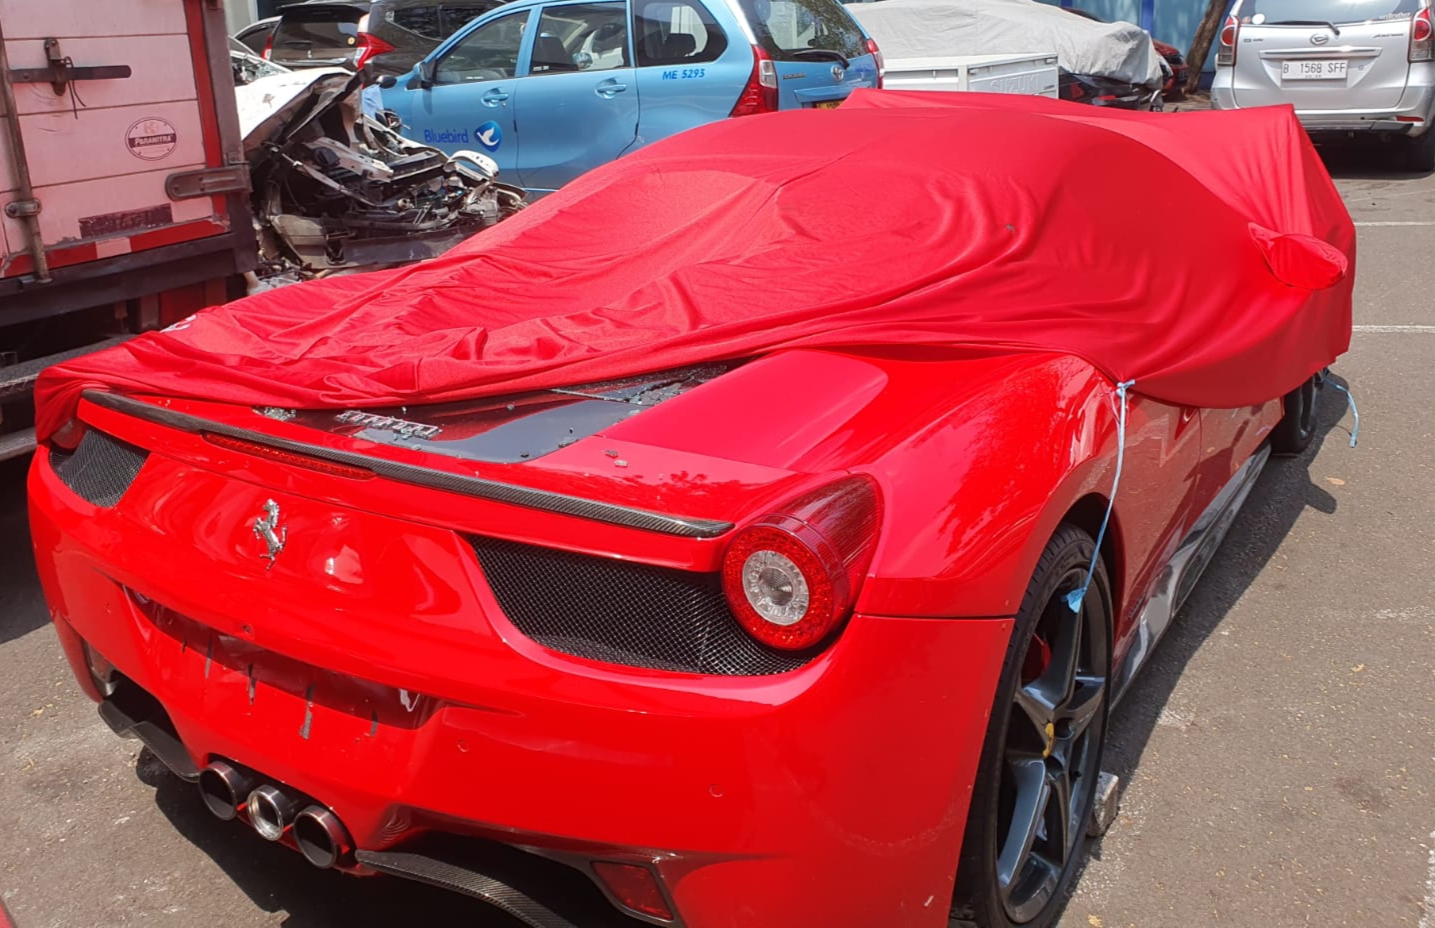 Pengemudi Mobil Ferrari Disebut Ngebut 100 Km/Jam Hingga Tabrak 5 Kendaraan di Senayan